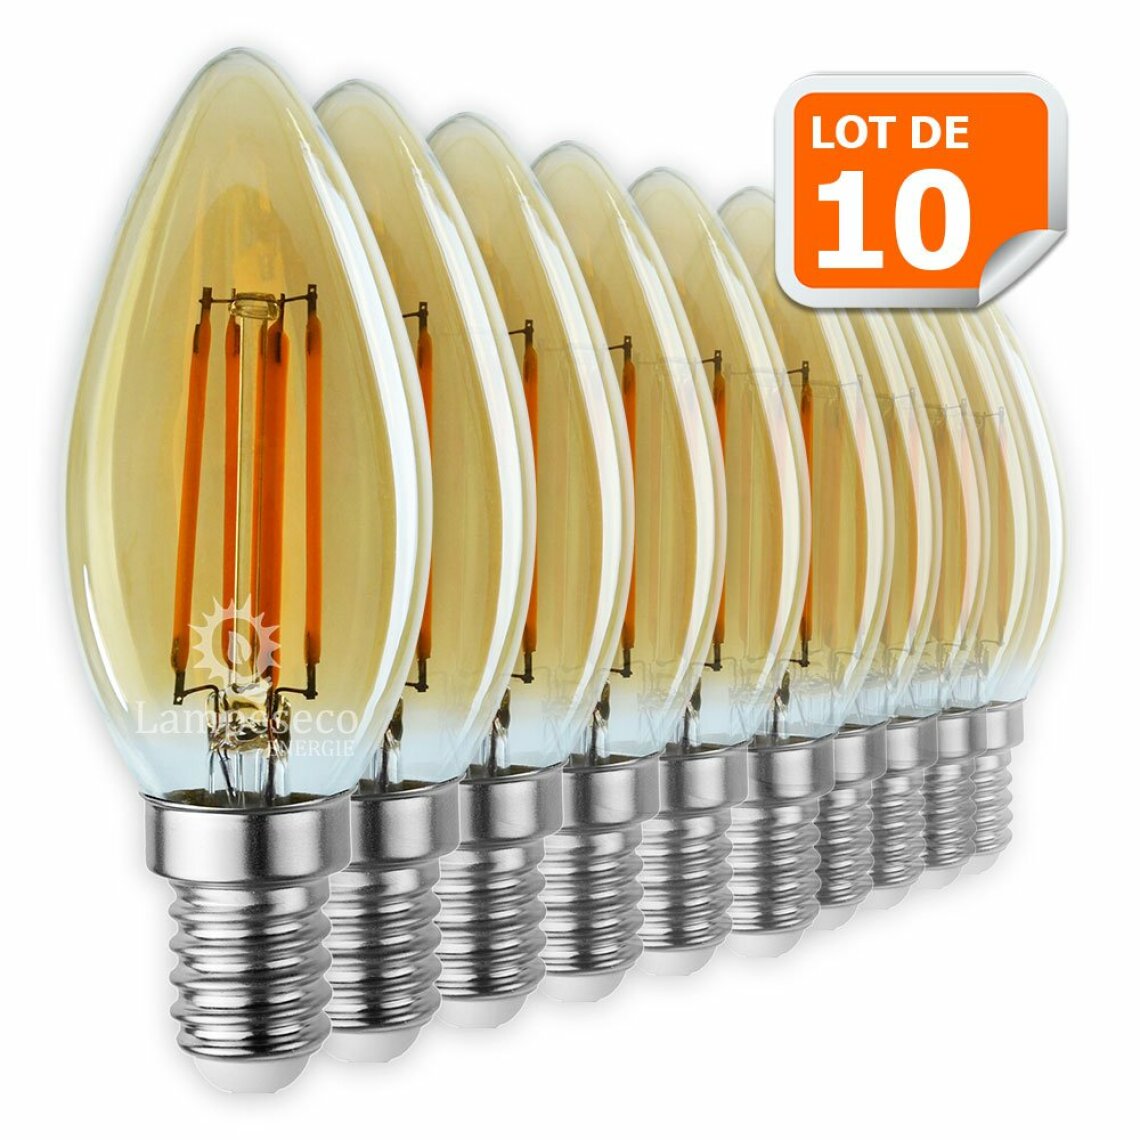 Lampesecoenergie - Lot de 10 Ampoules Led Flamme Filament Doré 4 watt (éq. 42 Watt) Culot E14 - Ampoules LED